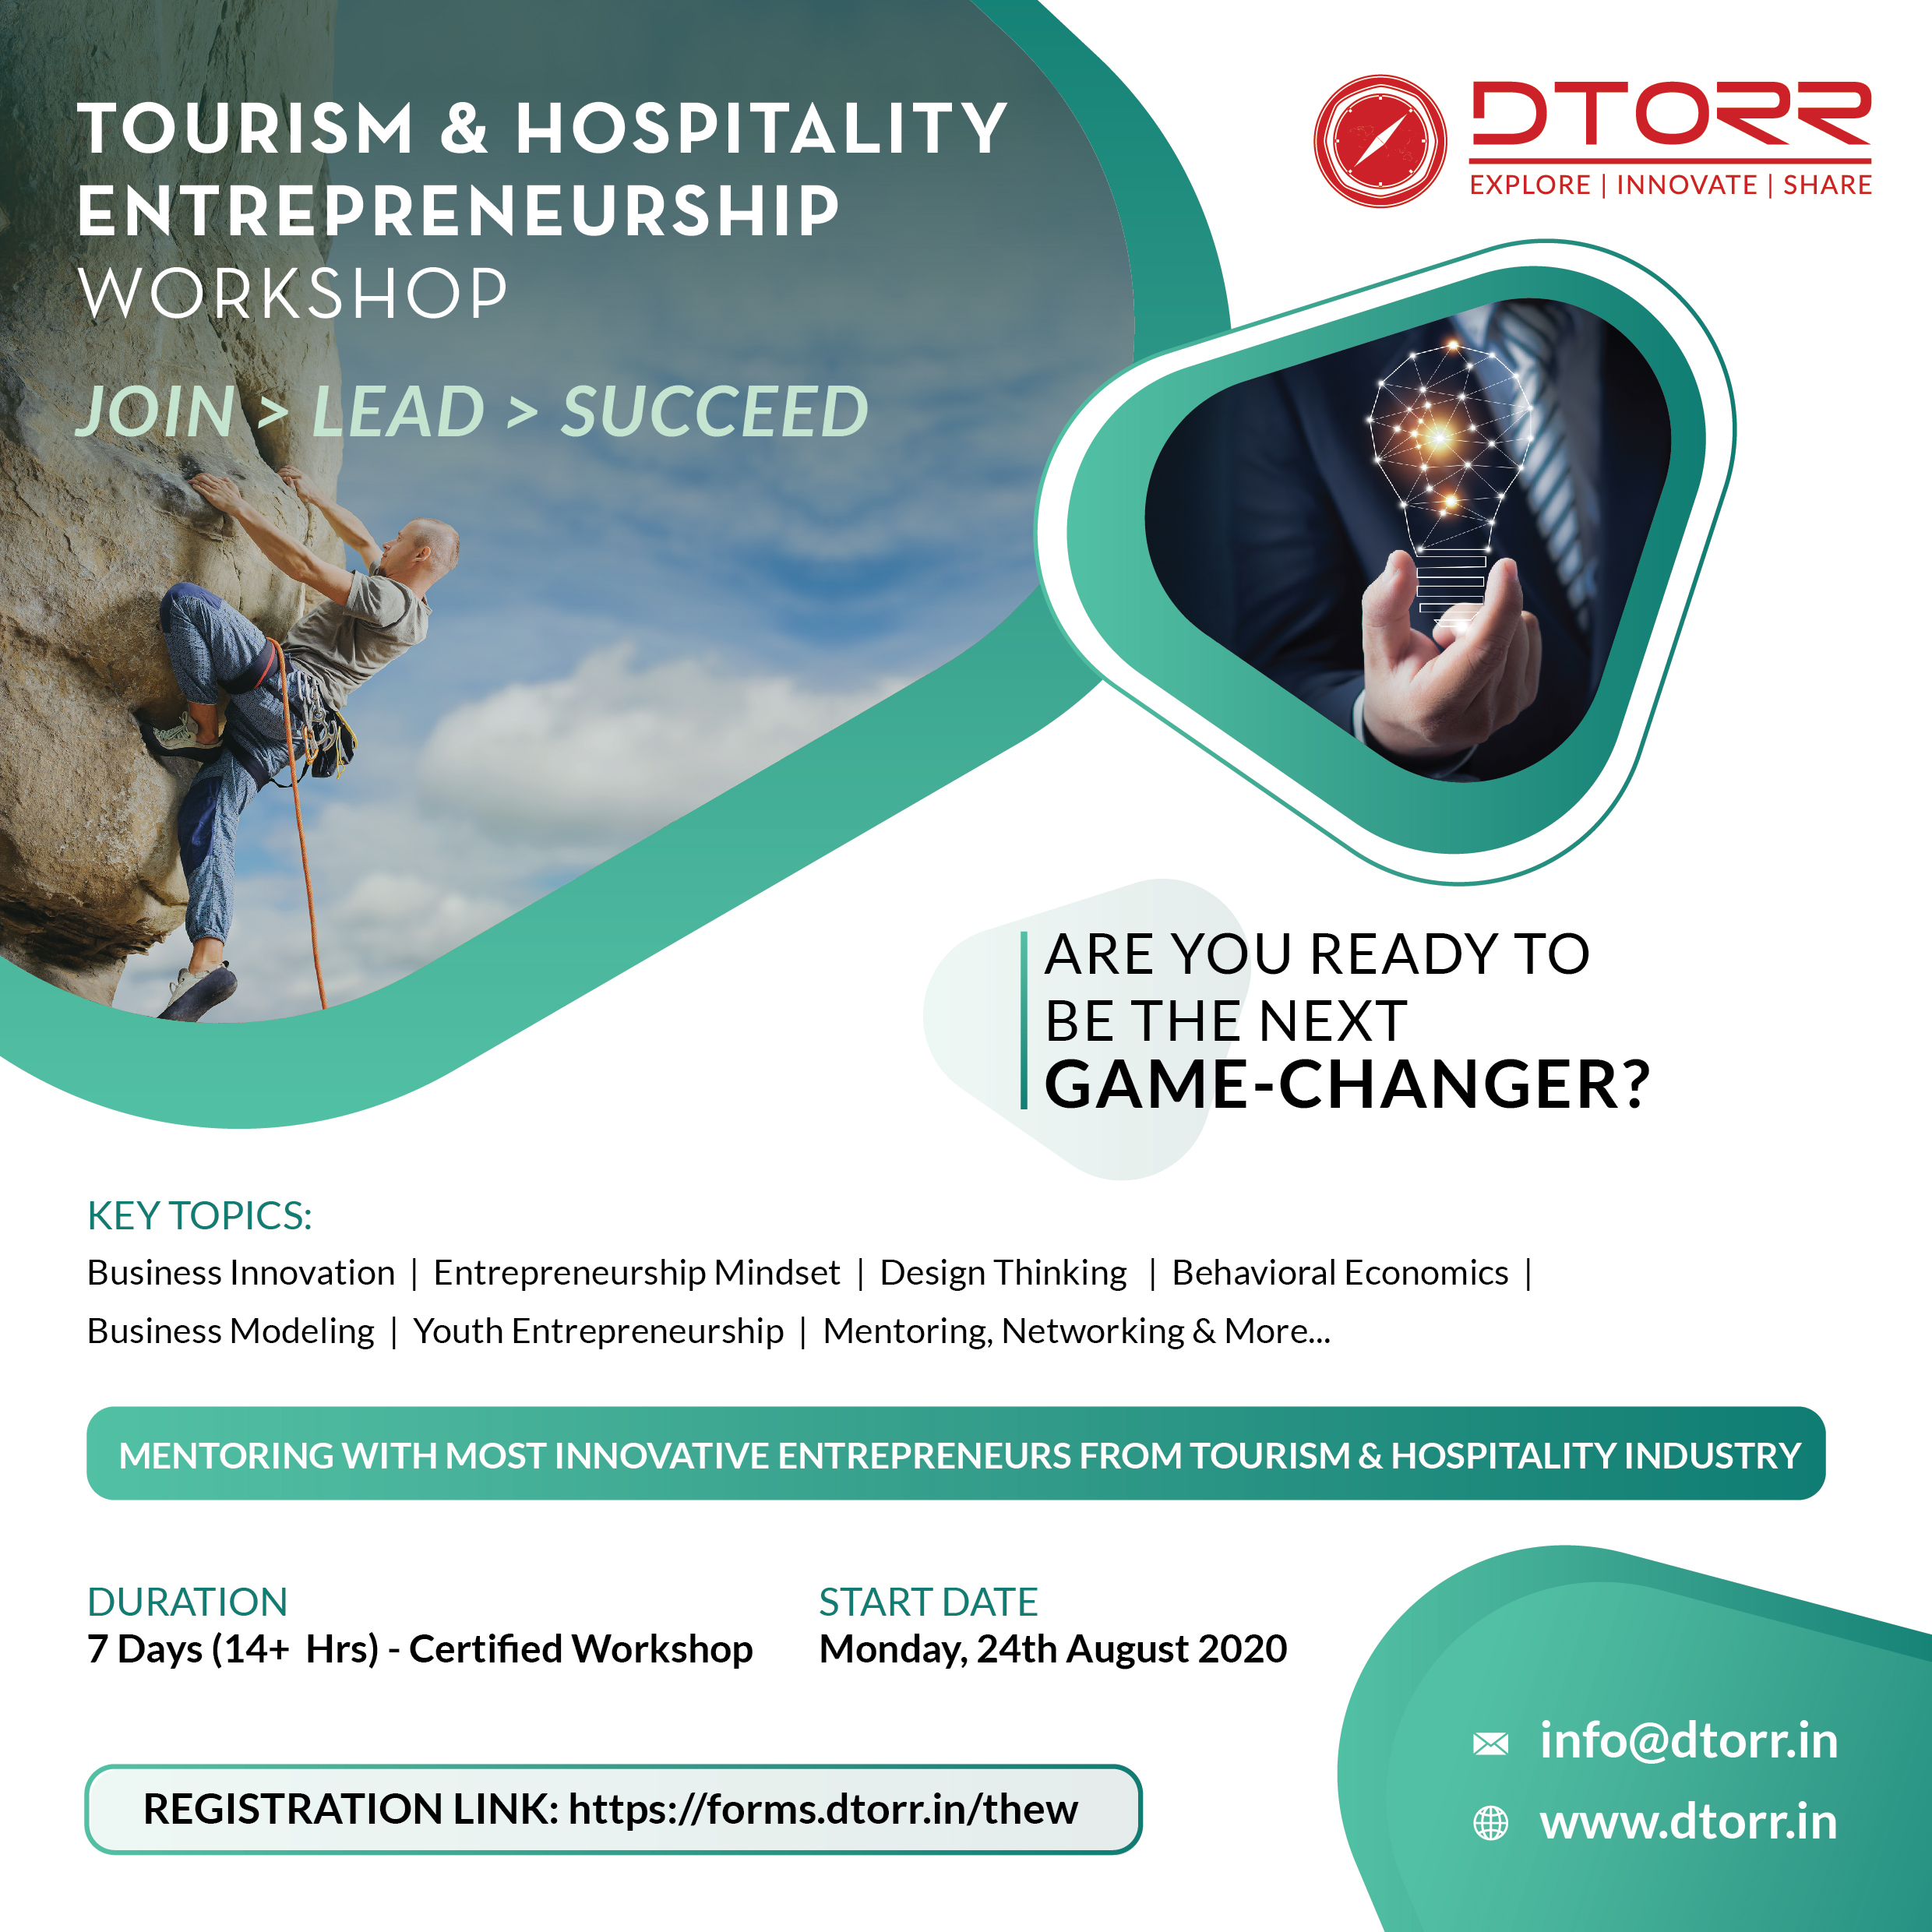 Tourism & Hospitality Entrepreneurship Workshop